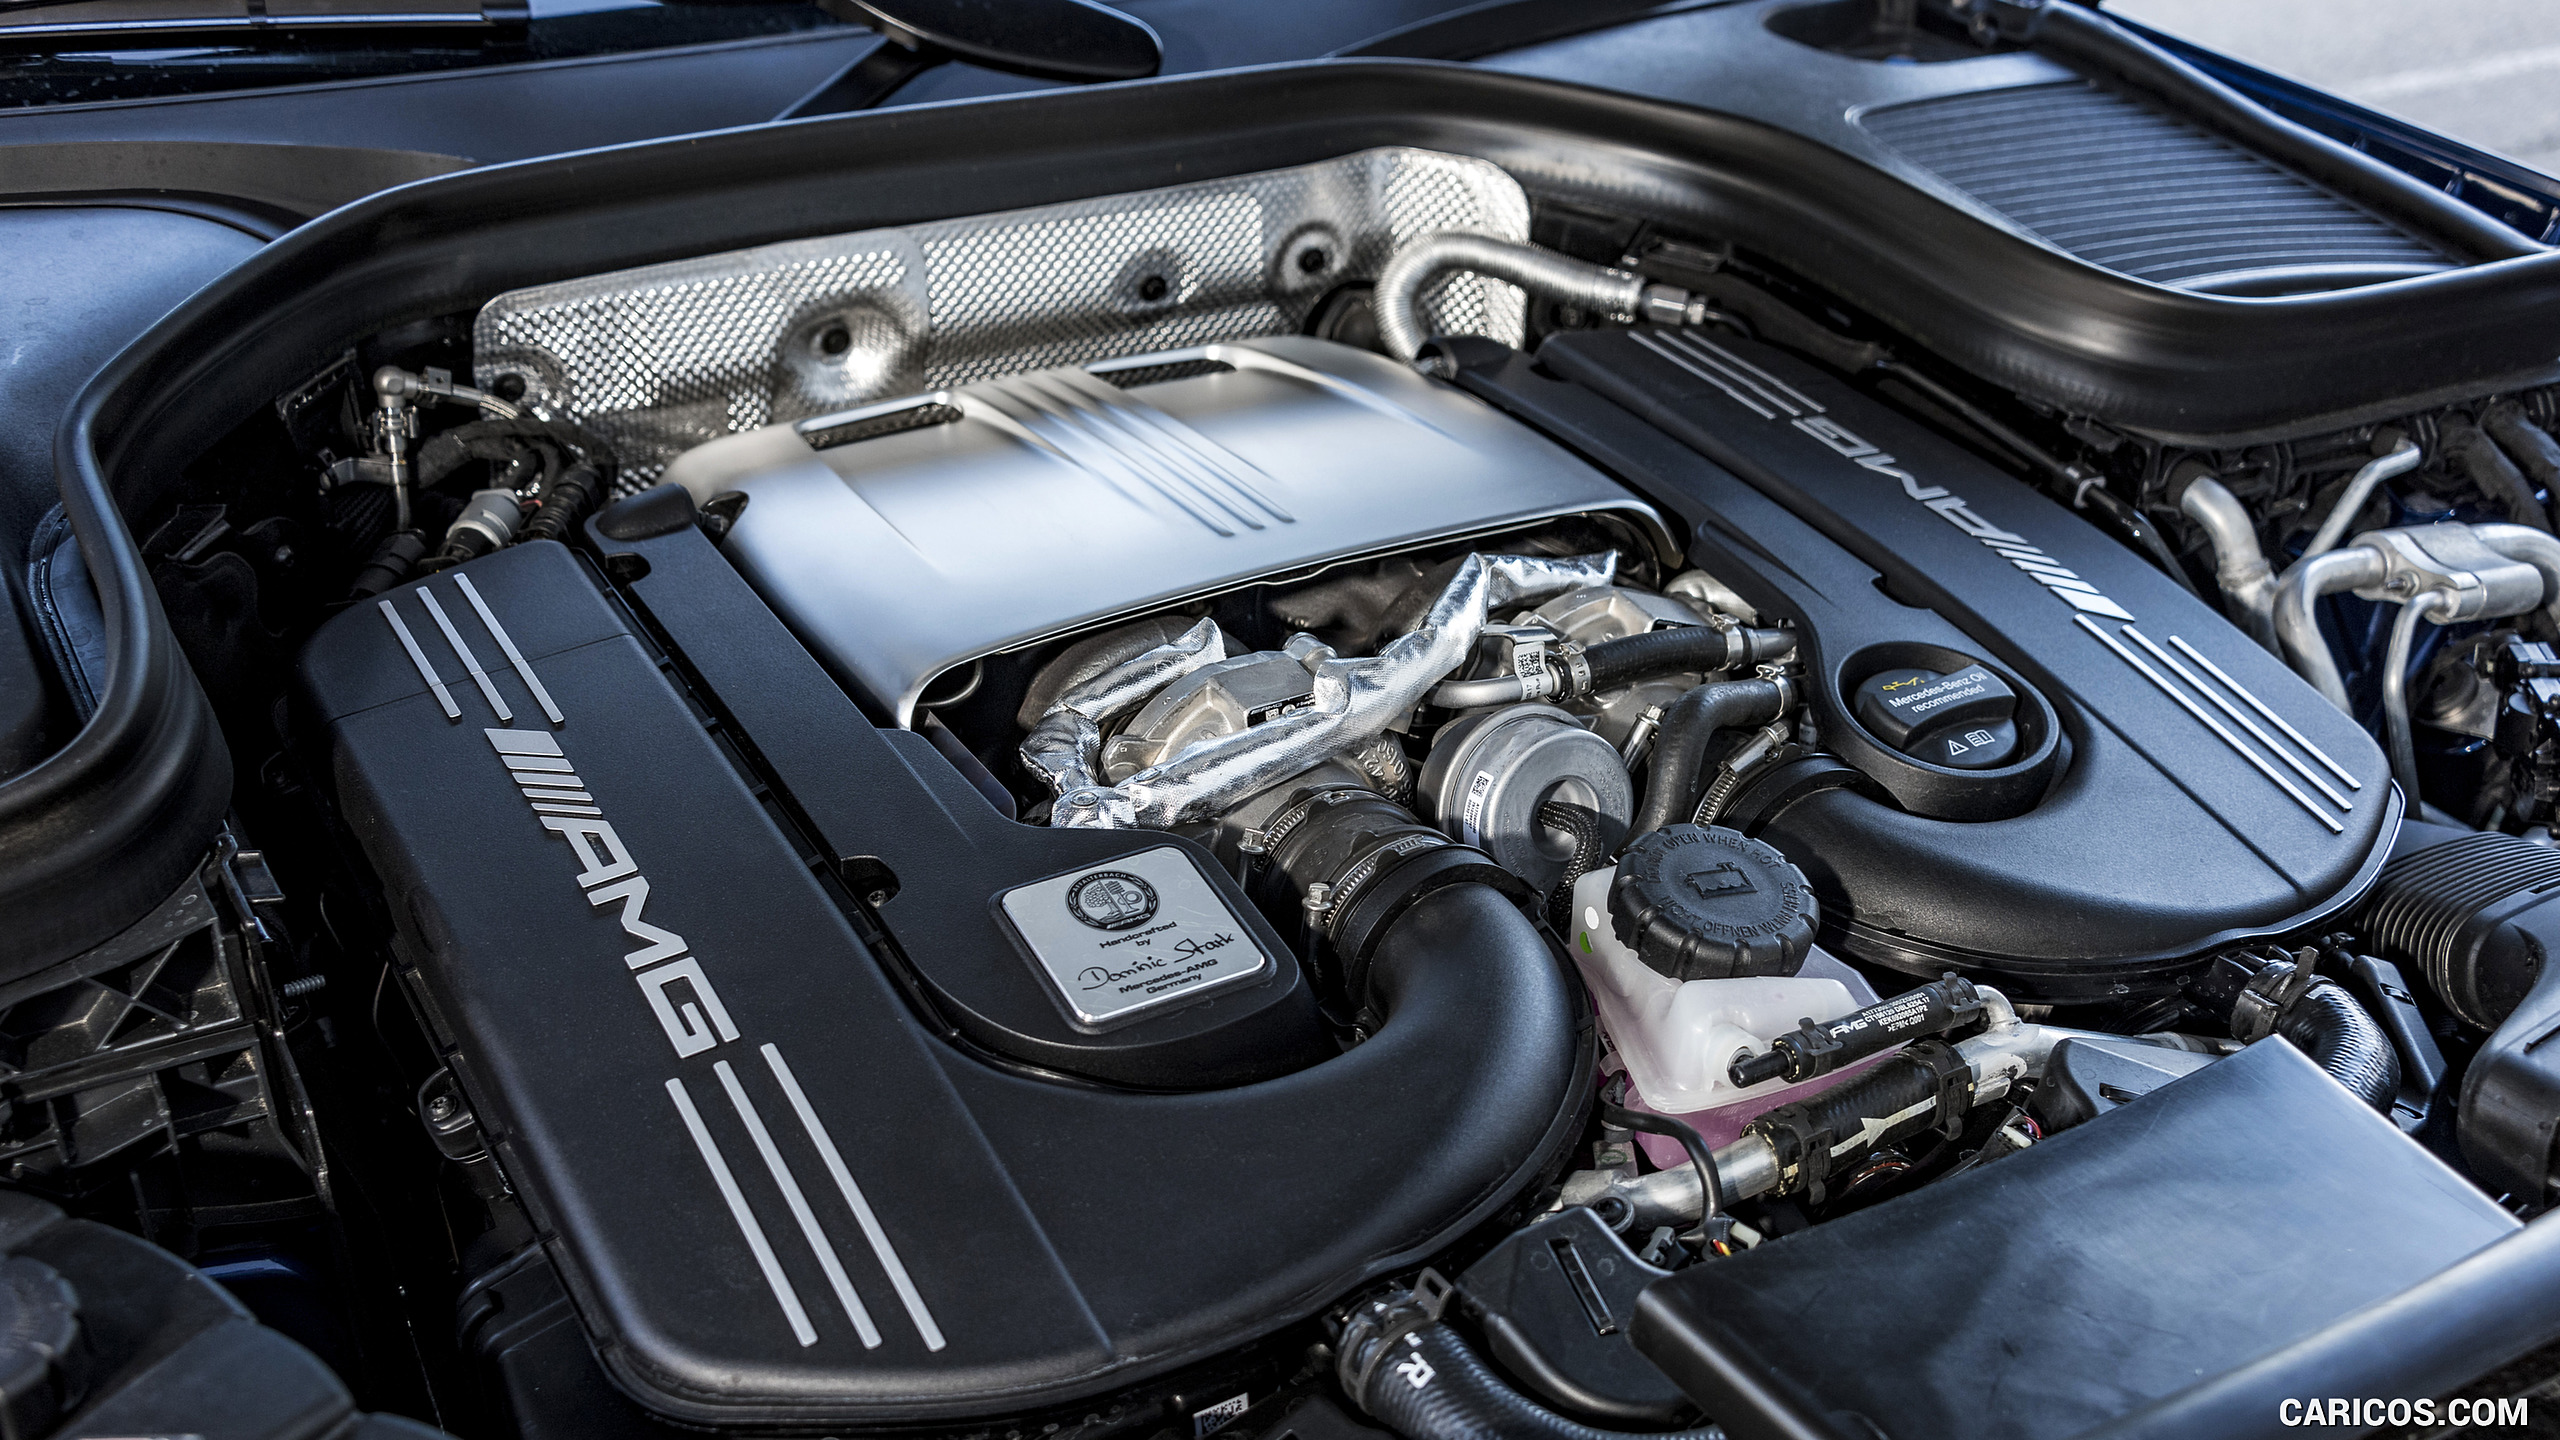 2018 Mercedes-AMG GLC 63 - Engine, #76 of 115